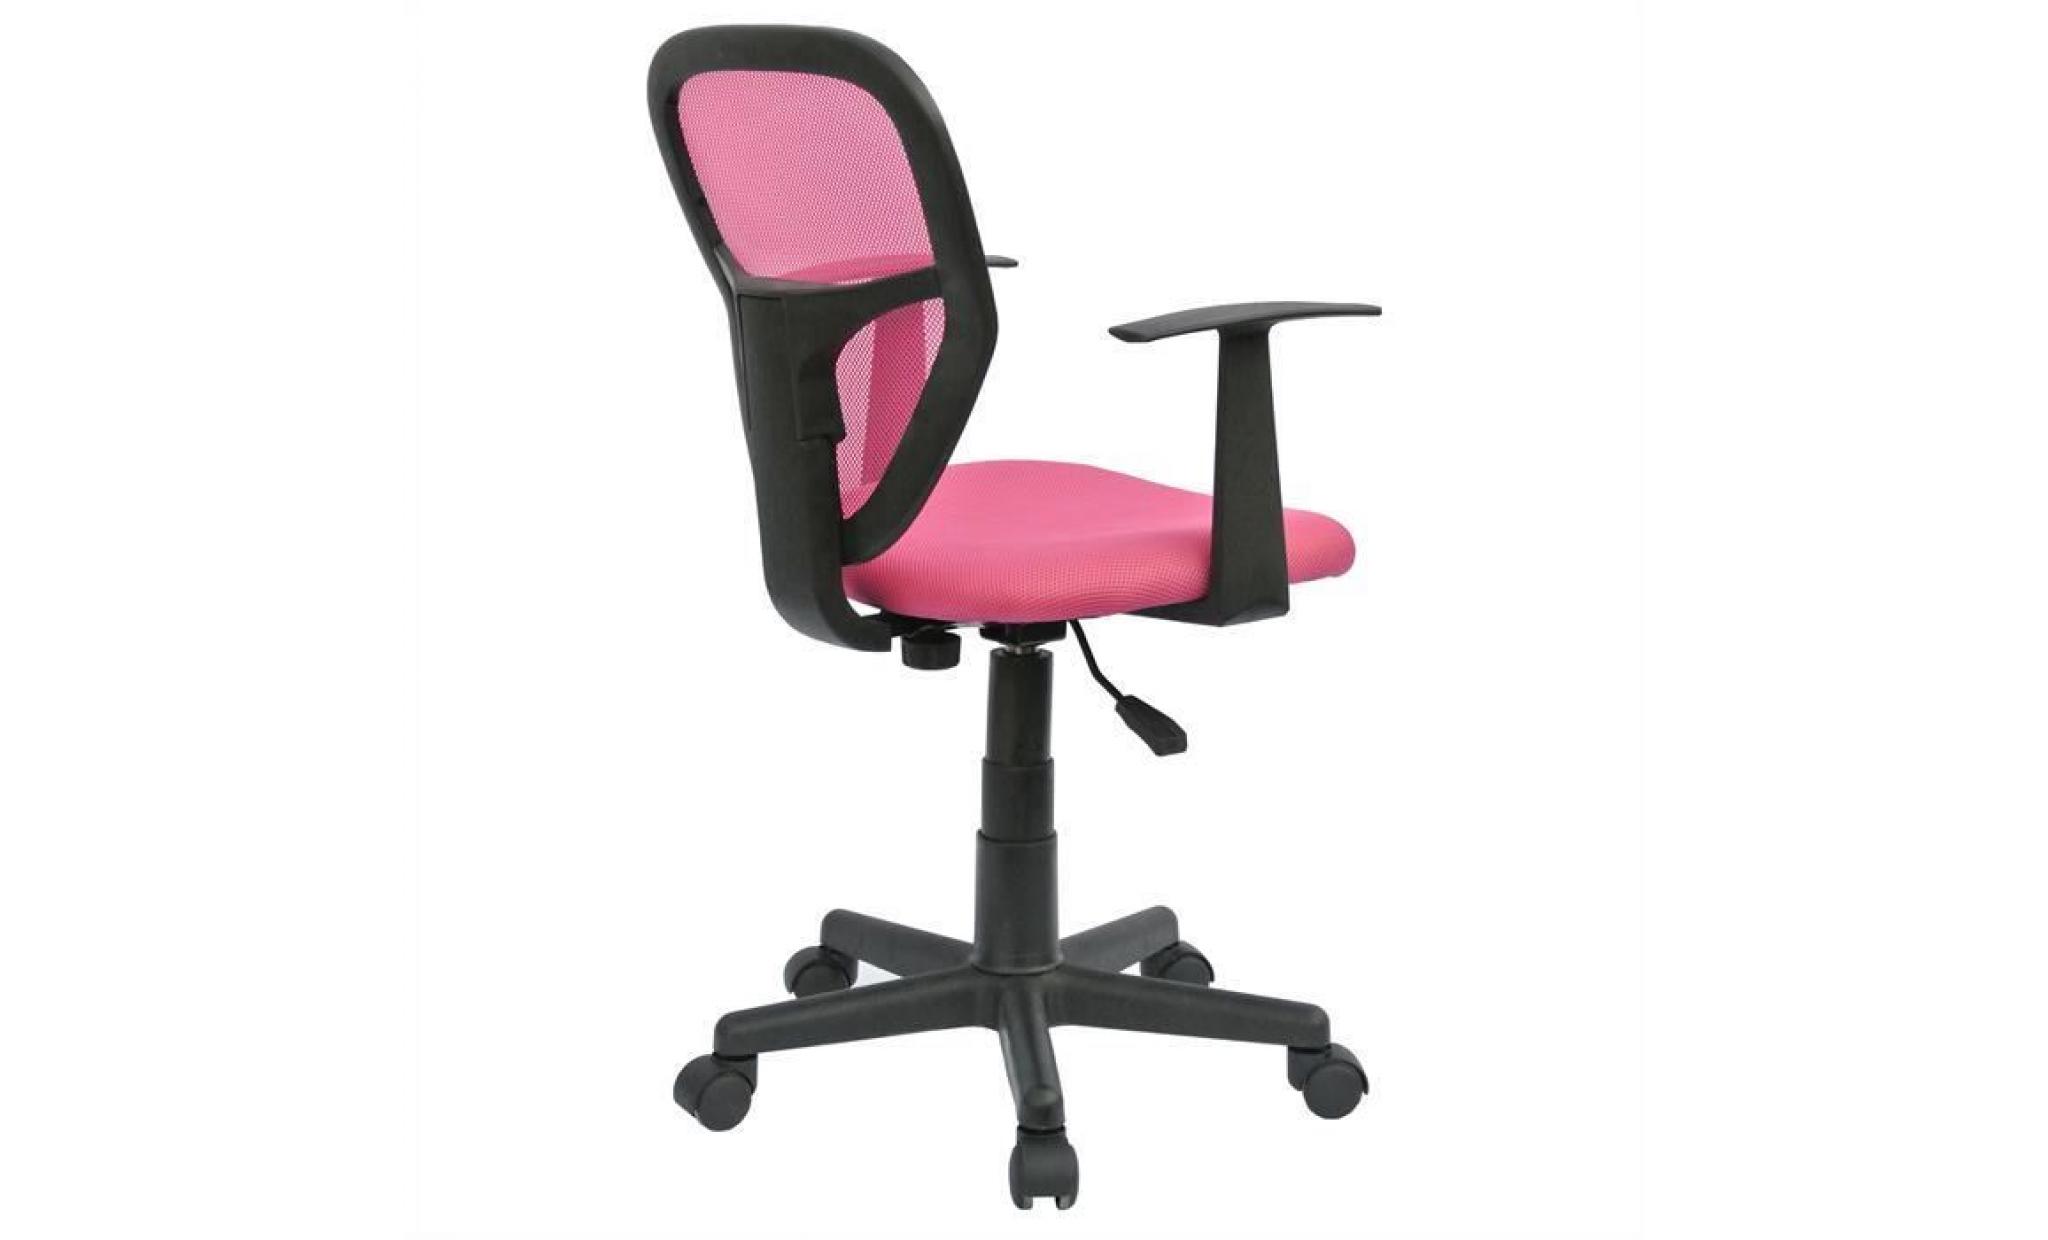 chaise de bureau pour enfant studio fauteuil pivotant et ergonomique avec accoudoirs, siège à roulettes avec hauteur réglable, pink pas cher